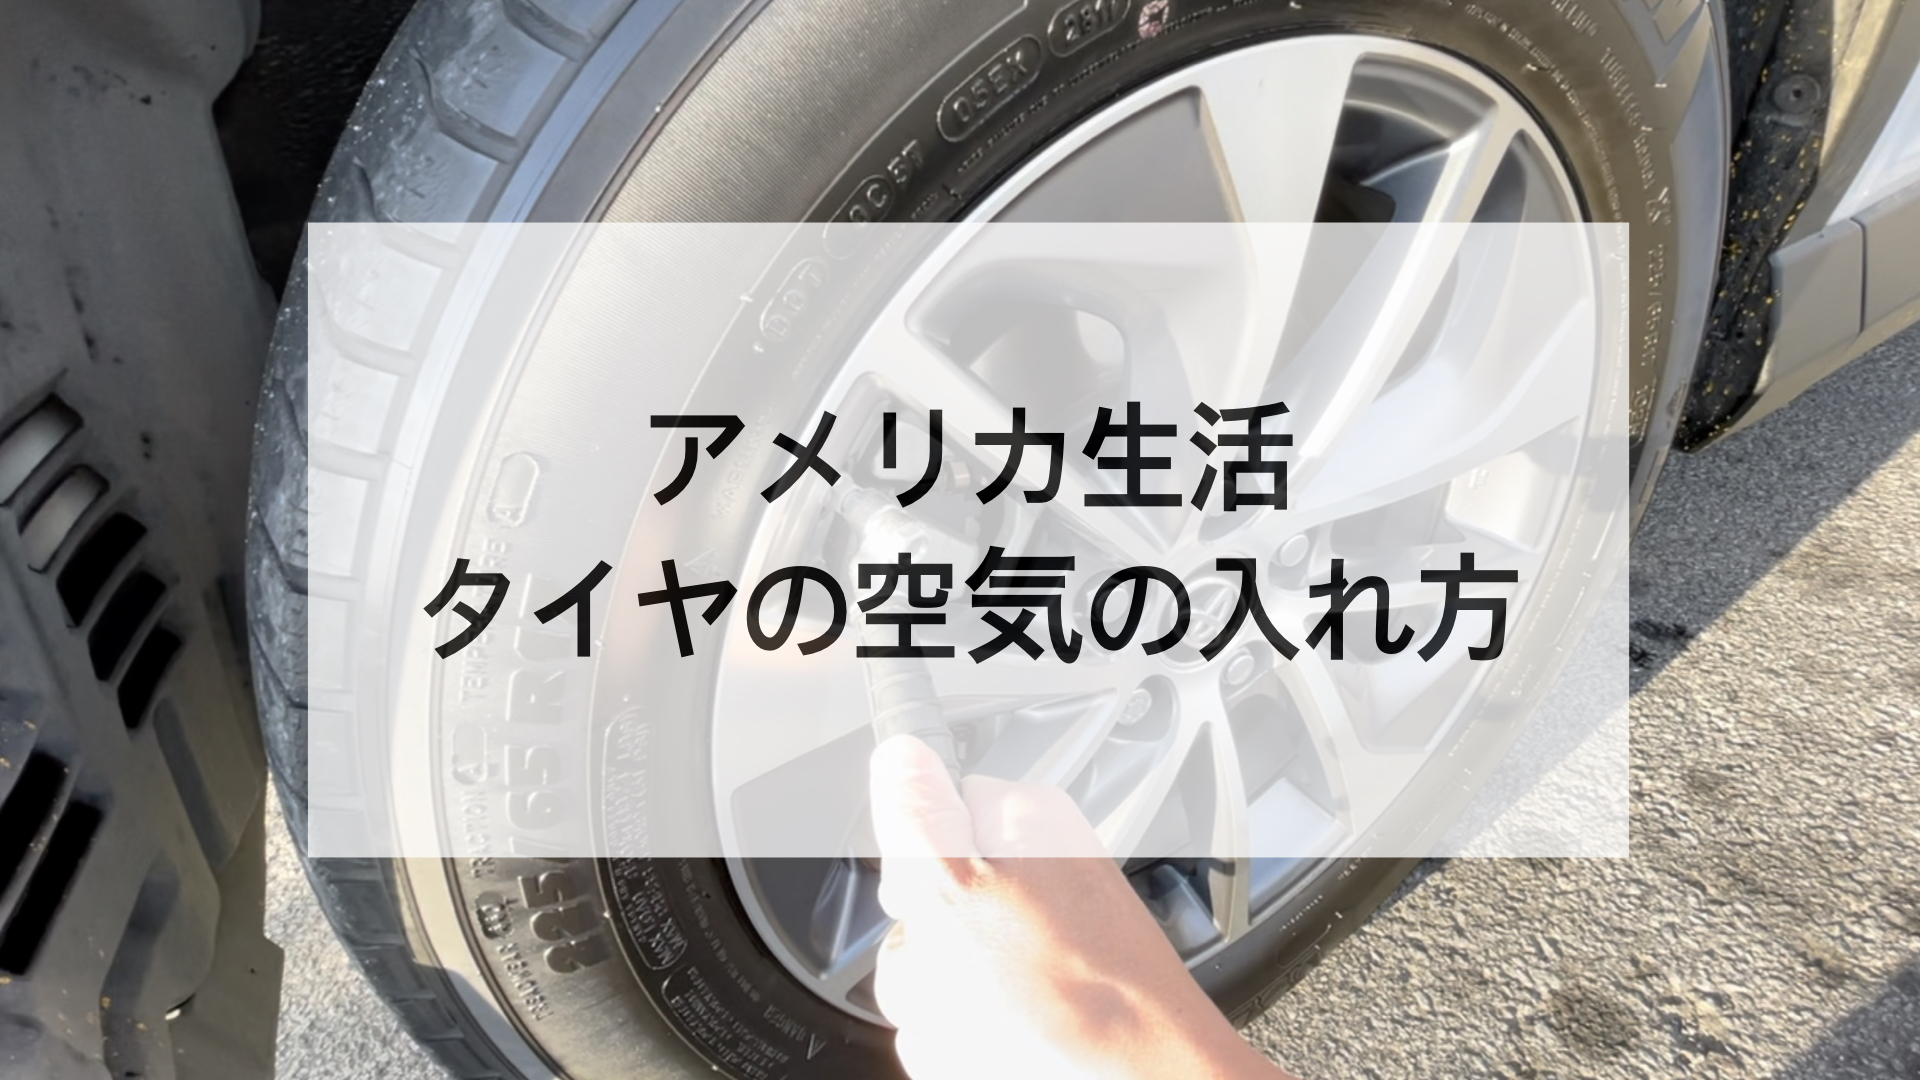 アメリカ生活 車タイヤの空気入れの見つけ方 入れ方 支払いトラブル対処 デジタル表示で簡単なxactair Ichiken エンジニアキャンパーのバエないアメリカ生活